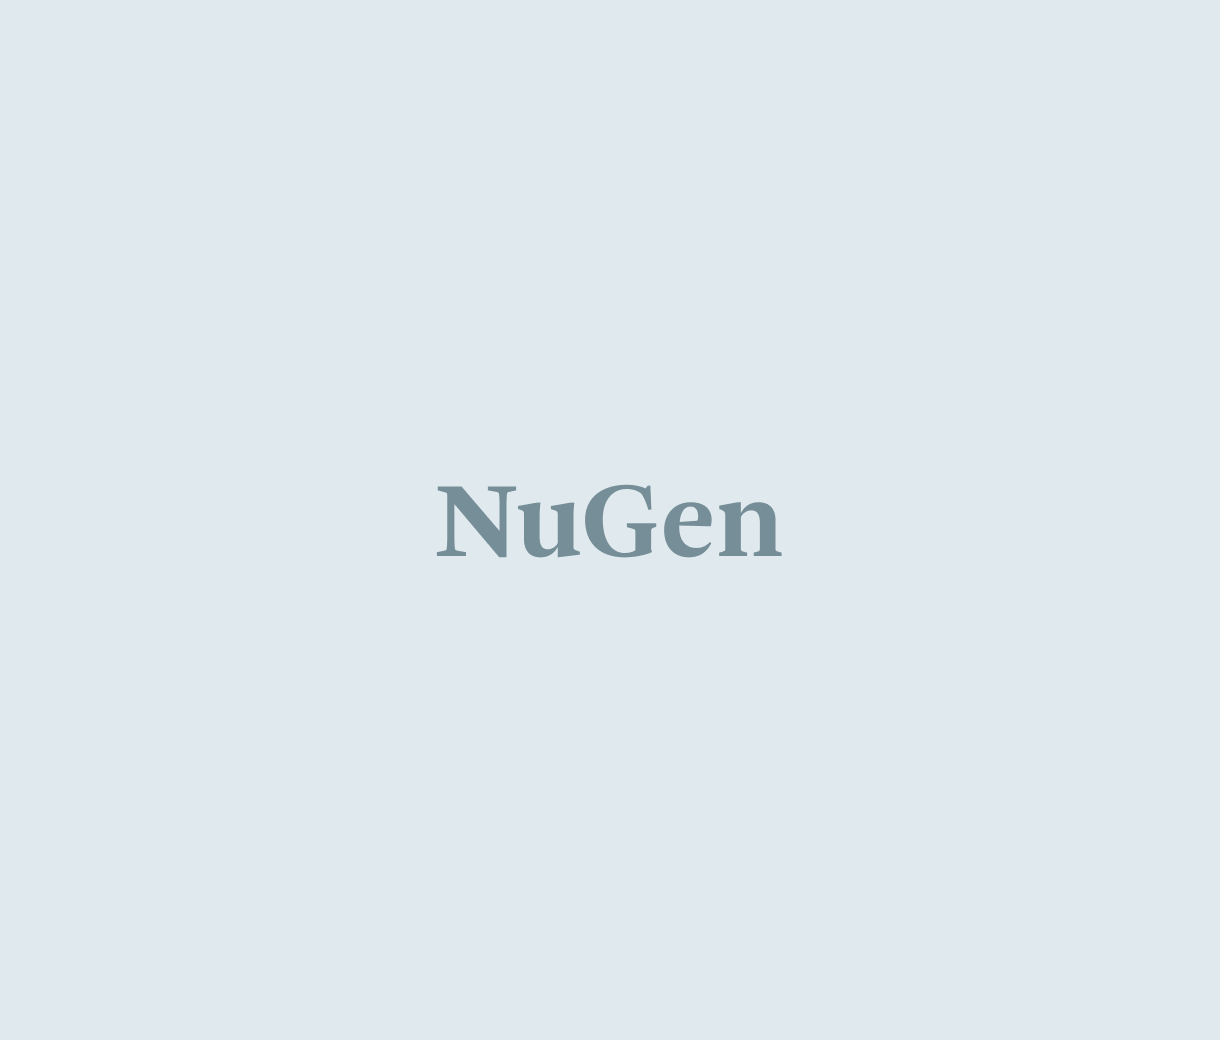 NuGen